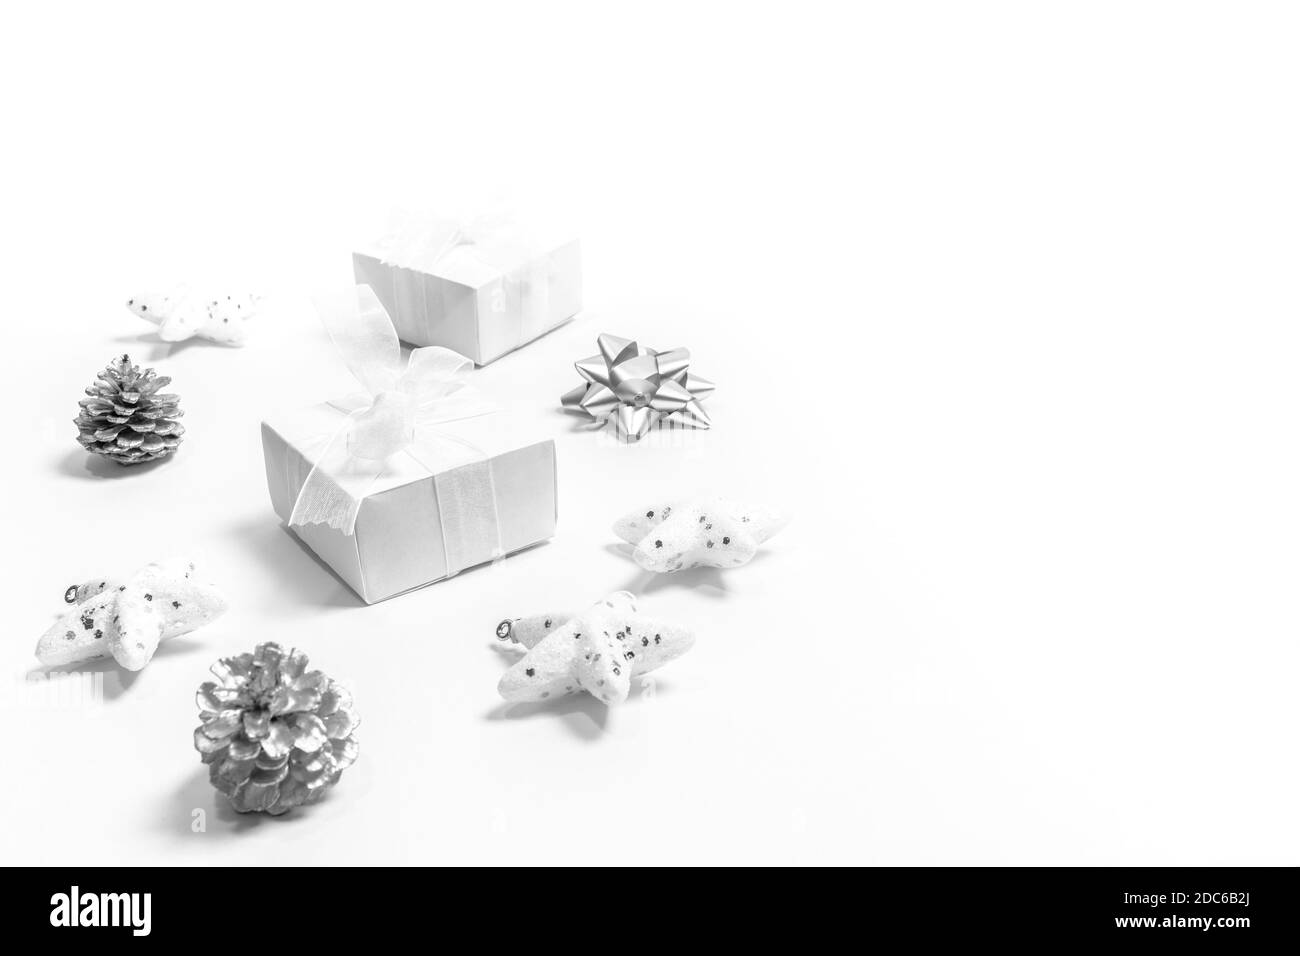 Anordnung von weißen und silbernen Weihnachtsdekorationen: Sterne, zwei DIY Geschenkboxen, Tannenzapfen als Kreis auf weiß ausgelegt. Weihnachten modern minimal nordic c Stockfoto